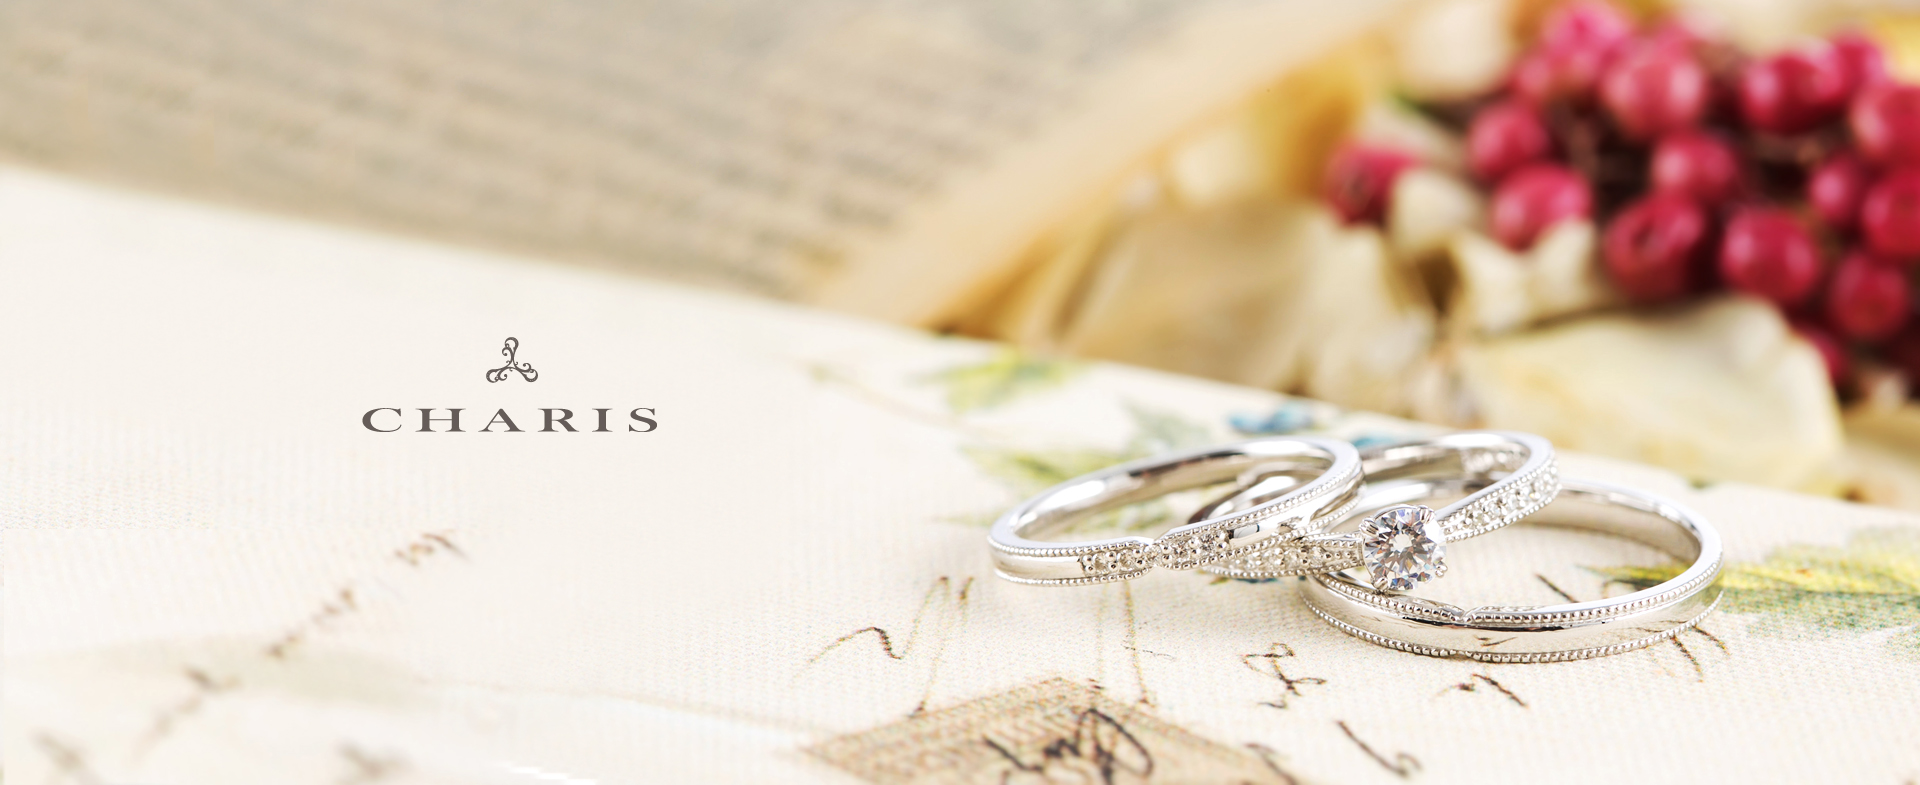 久留米市の婚約指輪・結婚指輪専門店CHARIS〈カリス〉は婚約指輪と結婚指輪がピッタリ合うセットリングをご用意しています。